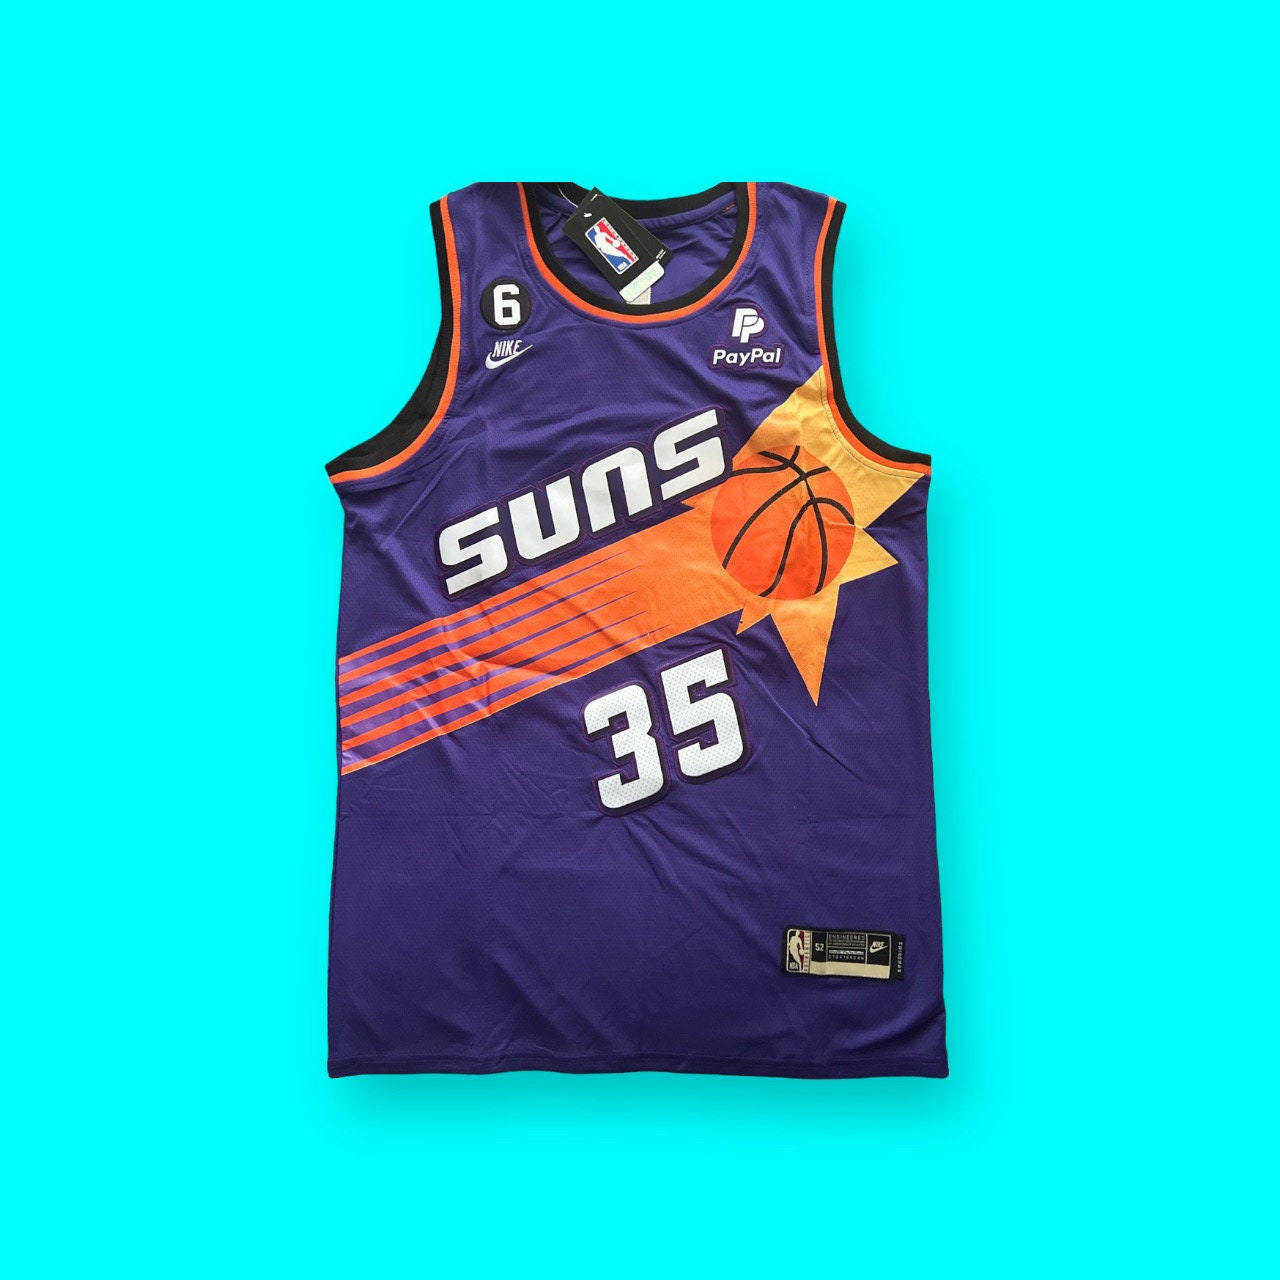 Nike Men's Texas Longhorns Kevin Durant #35 Burnt Orange Limited Basketball Jersey, Large